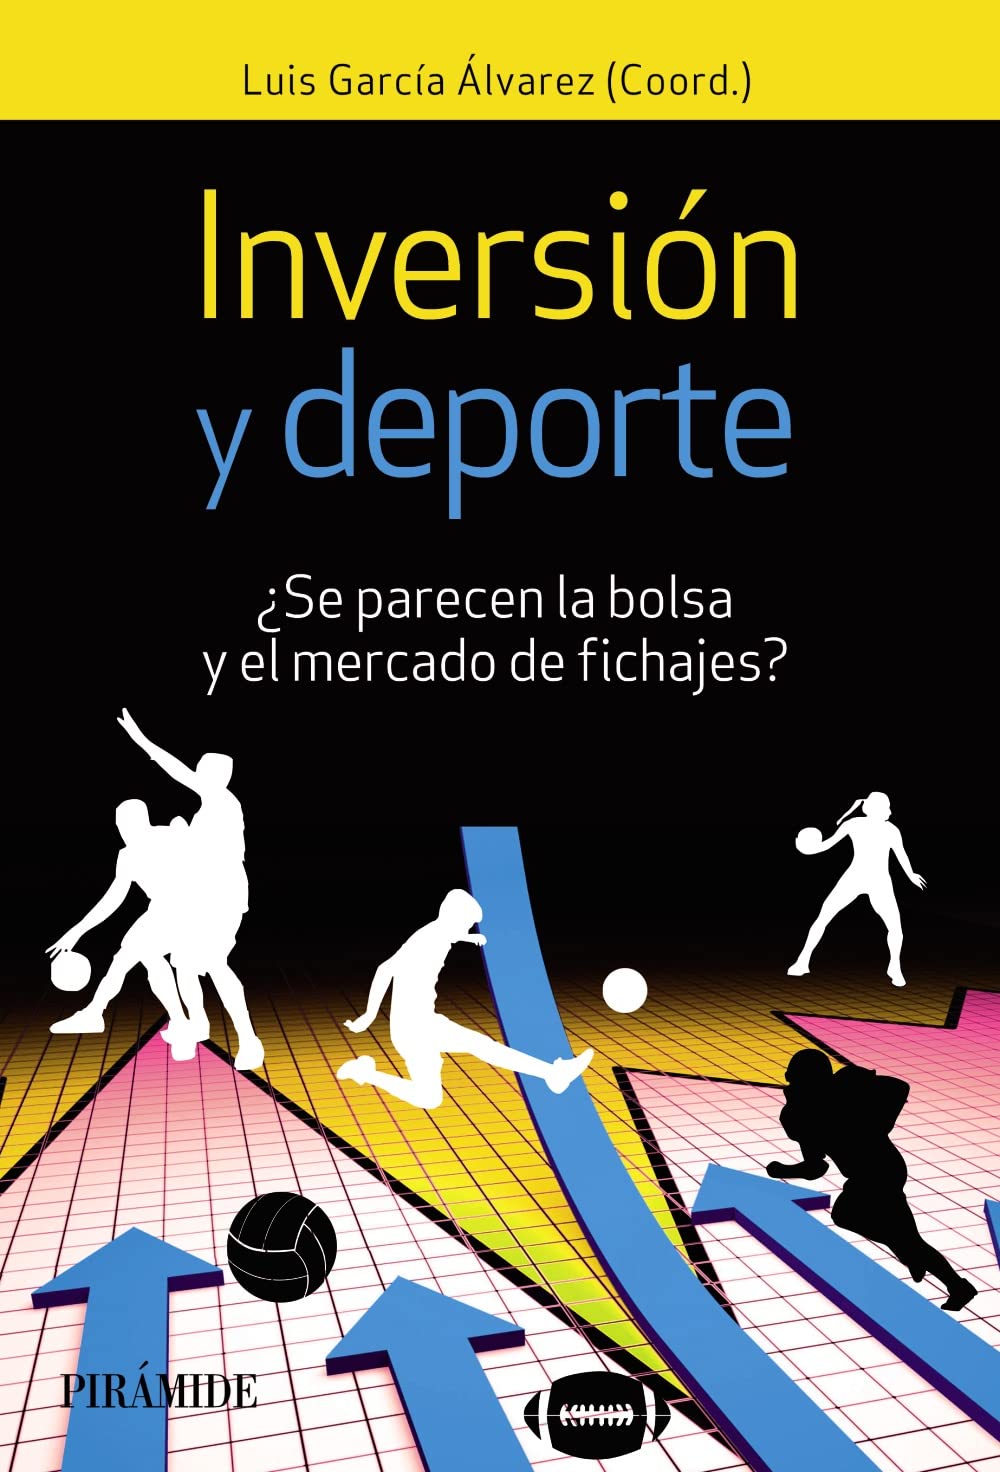 Inversores_autores_libros_inversion_deporte